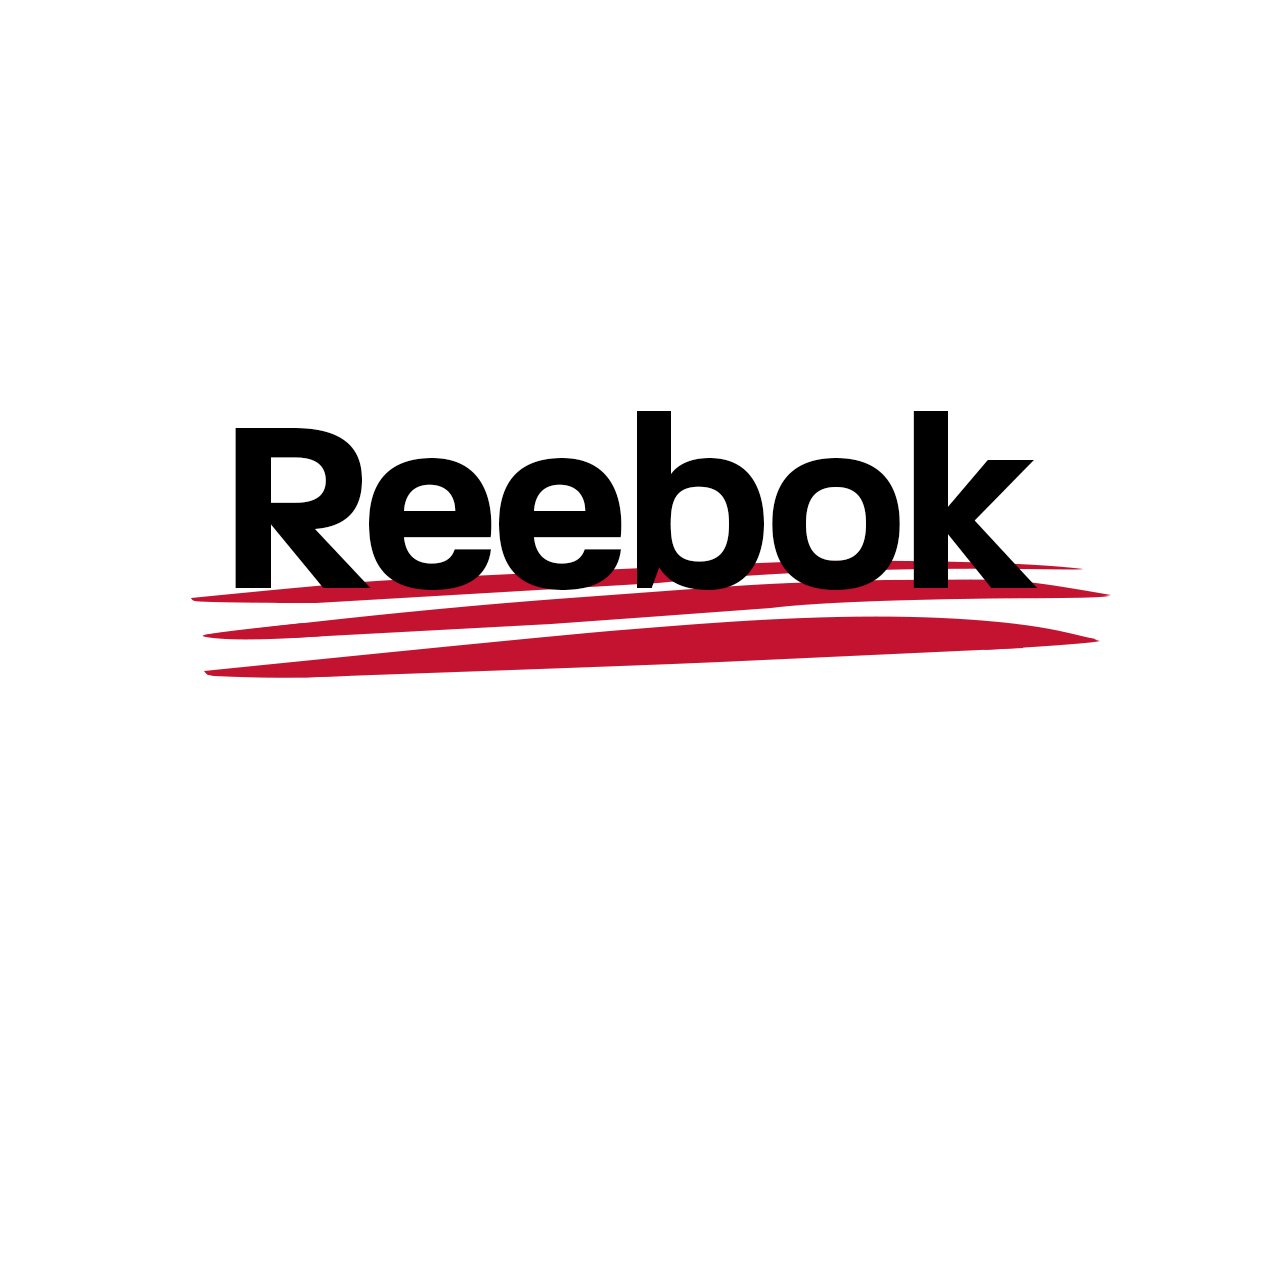 Reebok логотип (65 фото) скачать бесплатно